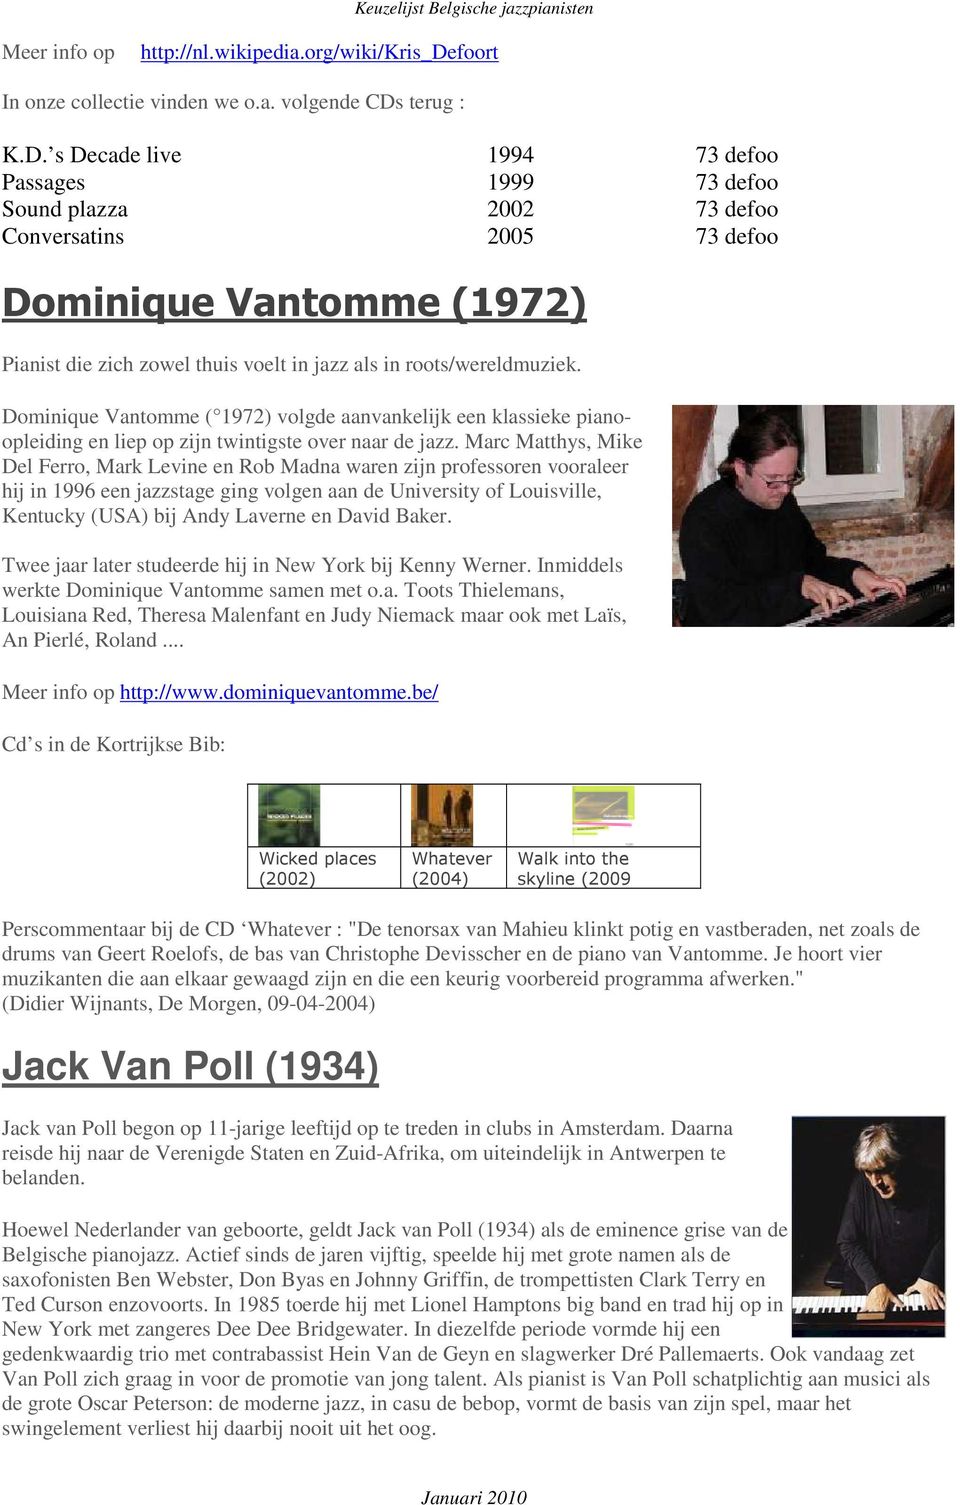 s Decade live 1994 73 defoo Passages 1999 73 defoo Sound plazza 2002 73 defoo Conversatins 2005 73 defoo Dominique Vantomme (1972) Pianist die zich zowel thuis voelt in jazz als in roots/wereldmuziek.